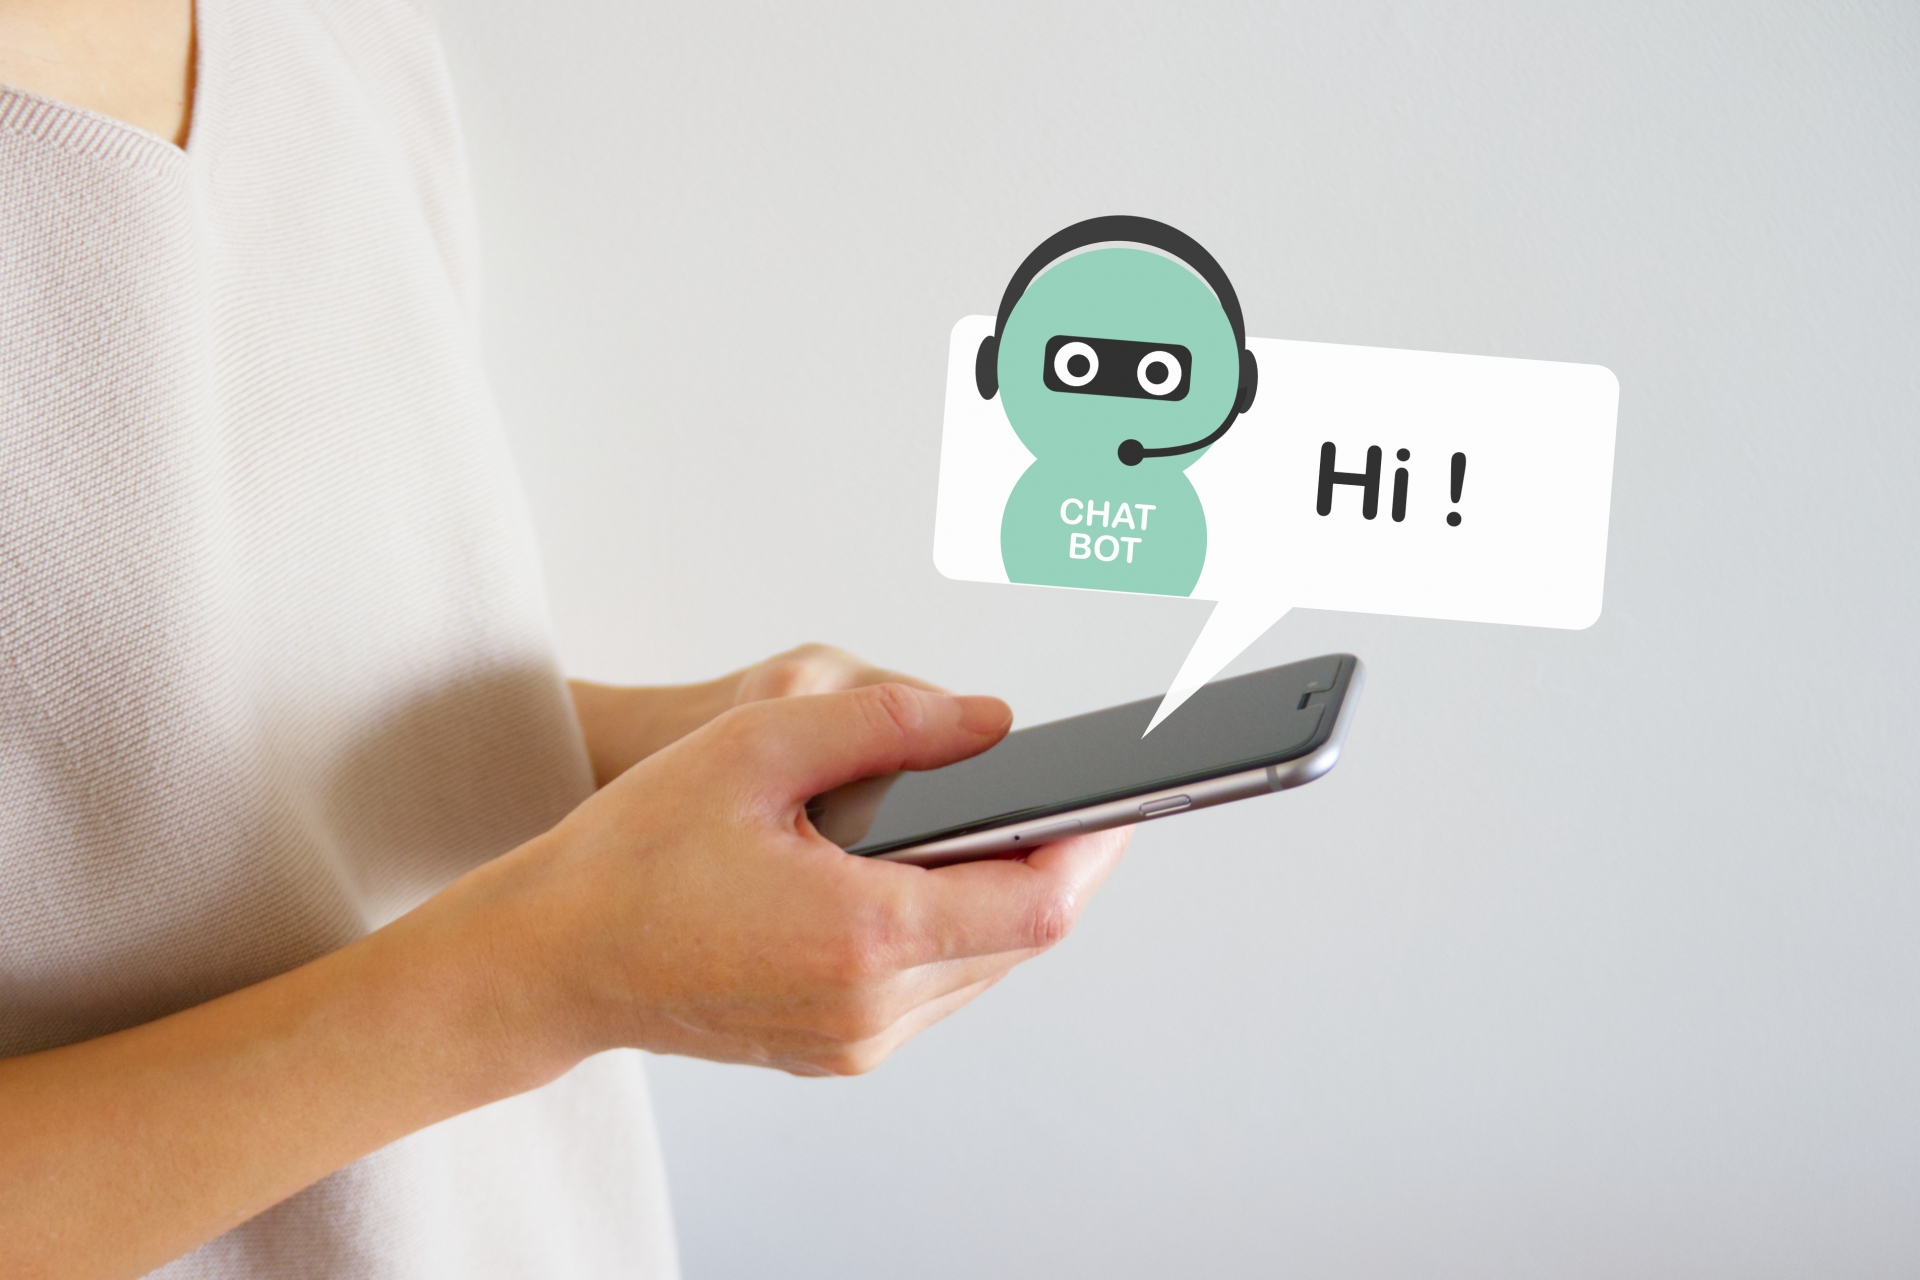 岩手県一関市、「easyBot」を会話型AIチャットボットとして採用[ニュース]